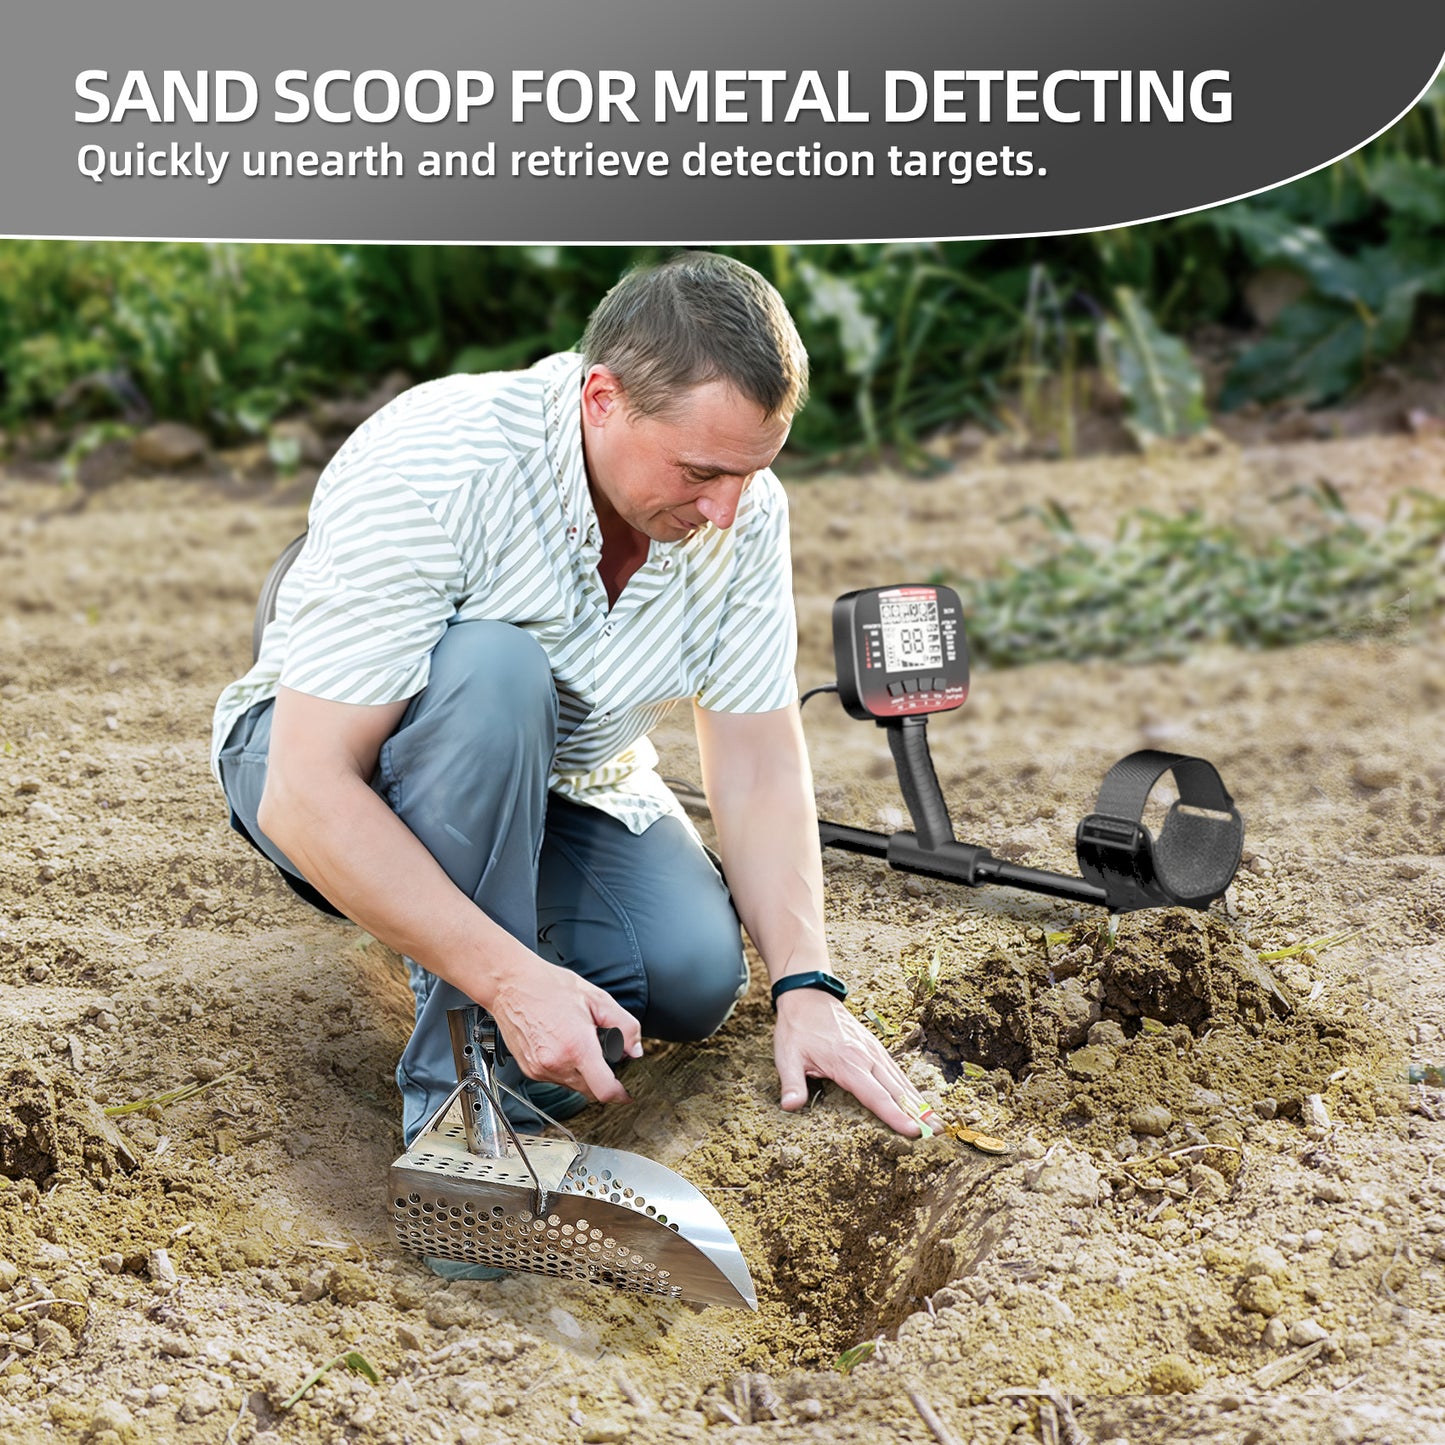 DR.ÖTEK Stainless Steel Sand Scoop for Metal Detecting